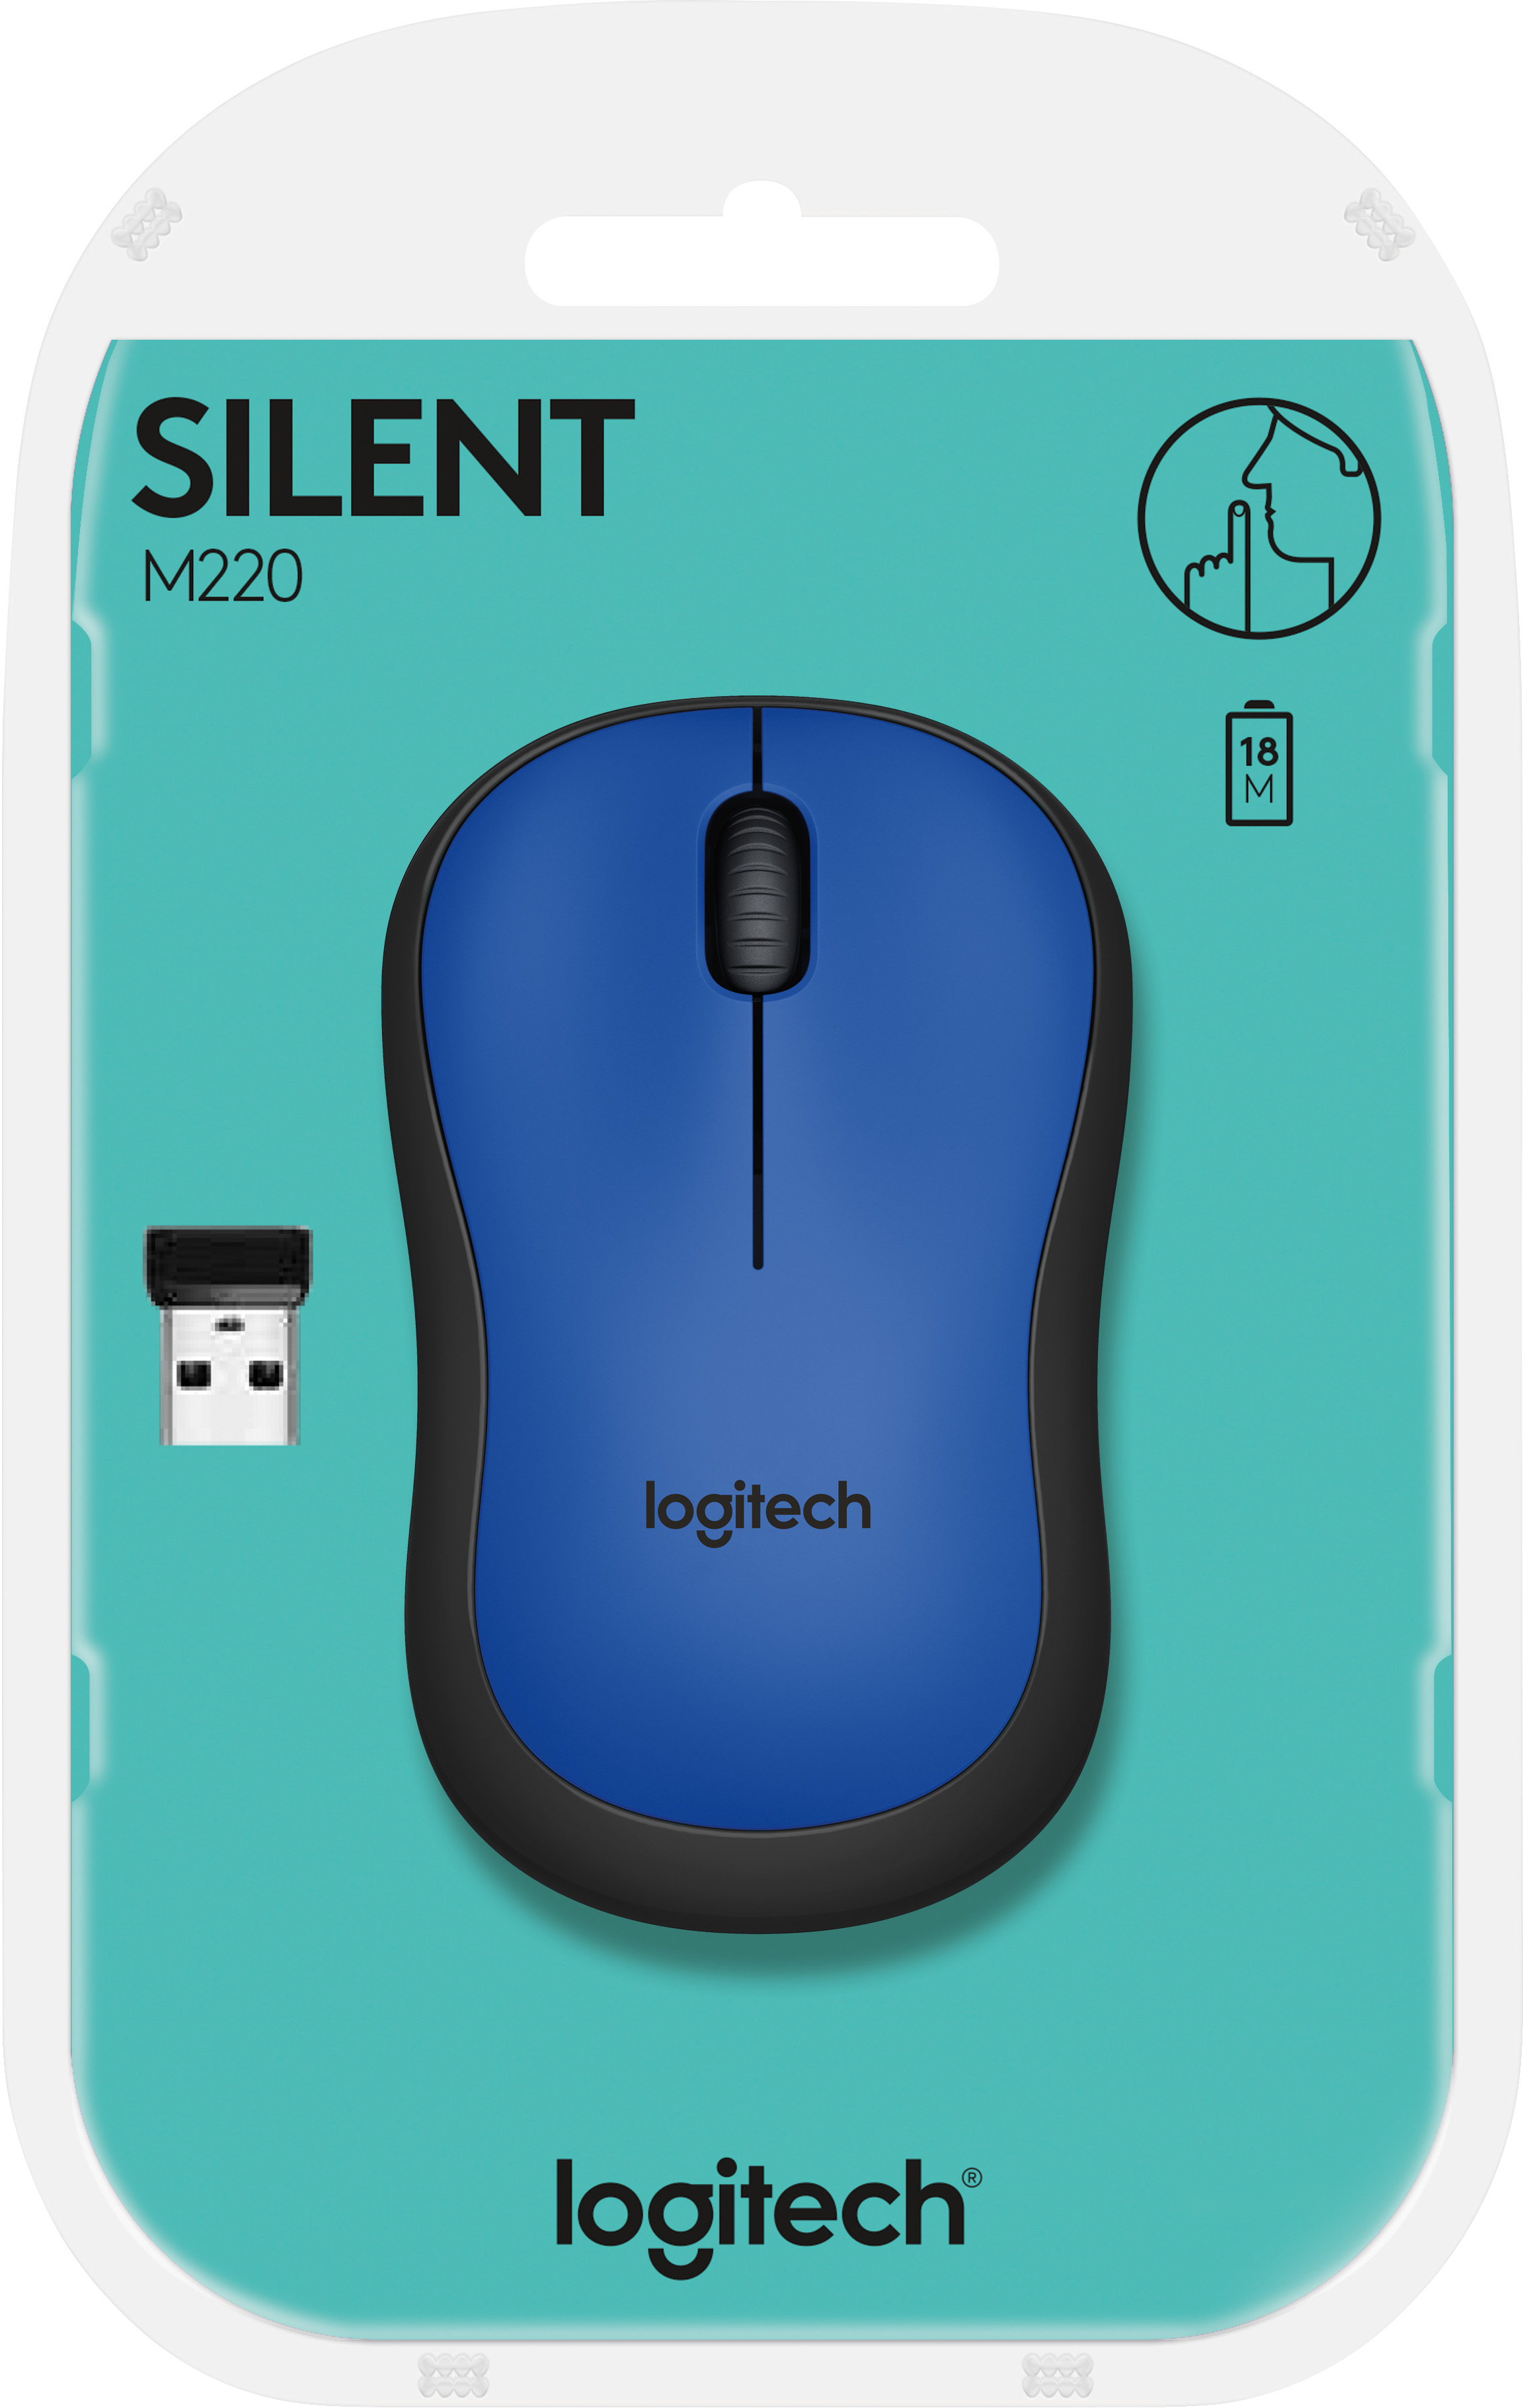 Logitech Maus M220, Silent, Wireless, blau Optisch, 1000 dpi, 3 Tasten, Retail